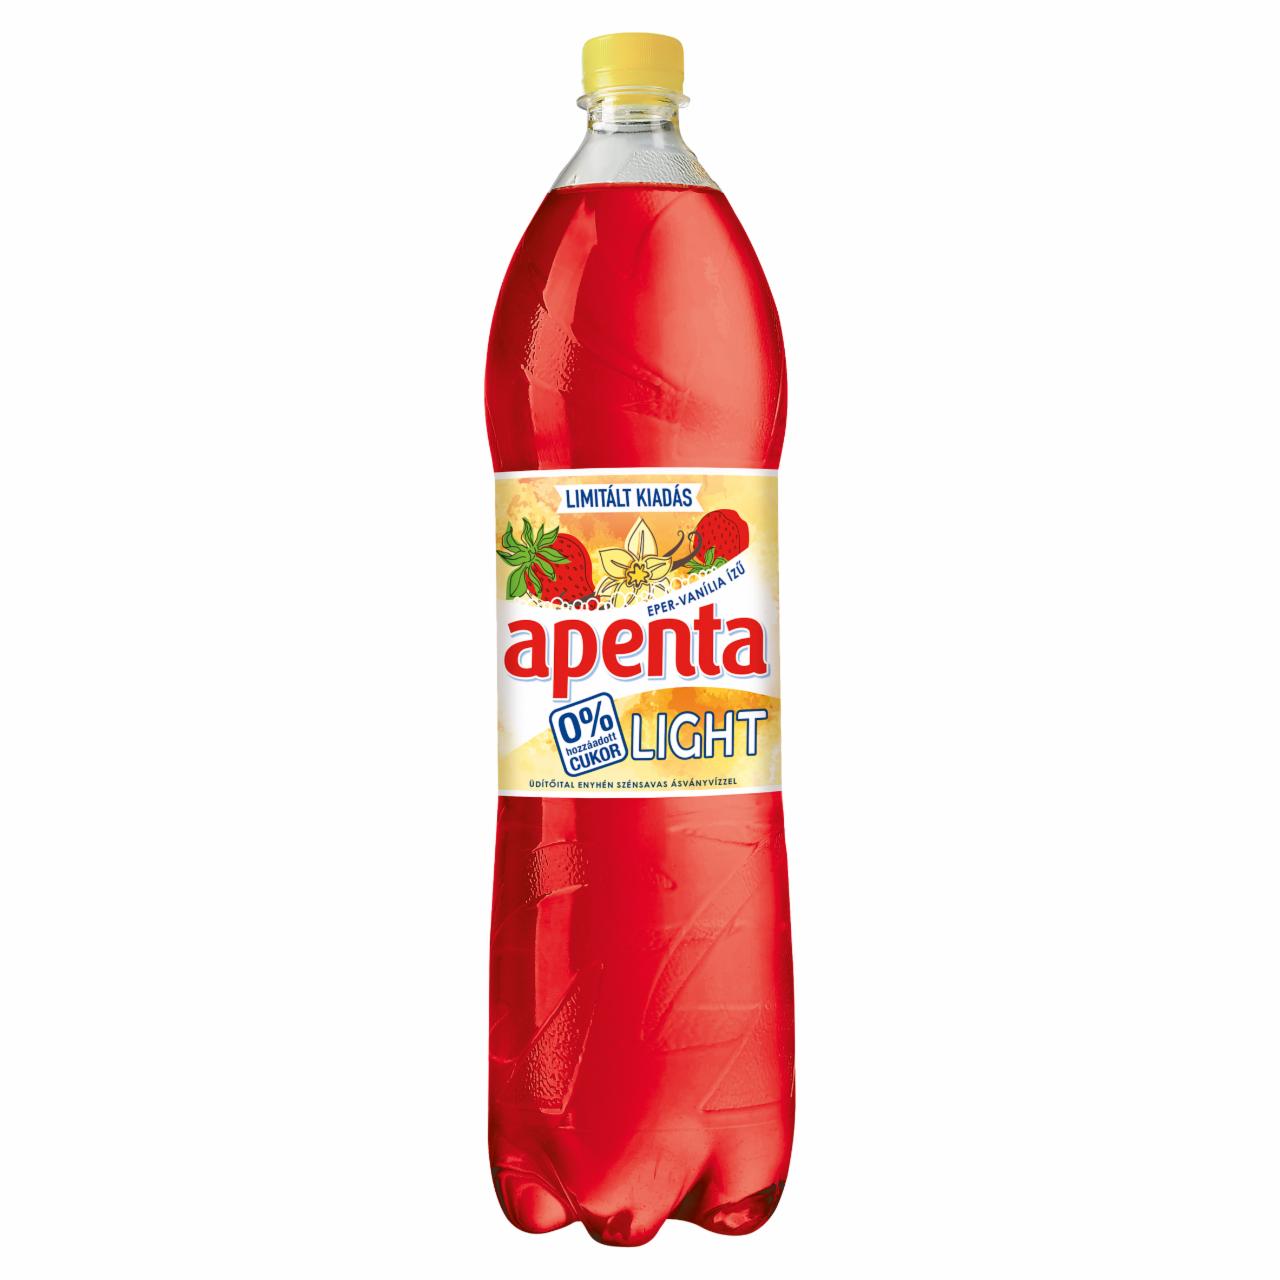 Képek - Apenta Light eper-vanília ízű enyhén szénsavas üdítőital édesítőszerekkel 1,5 l